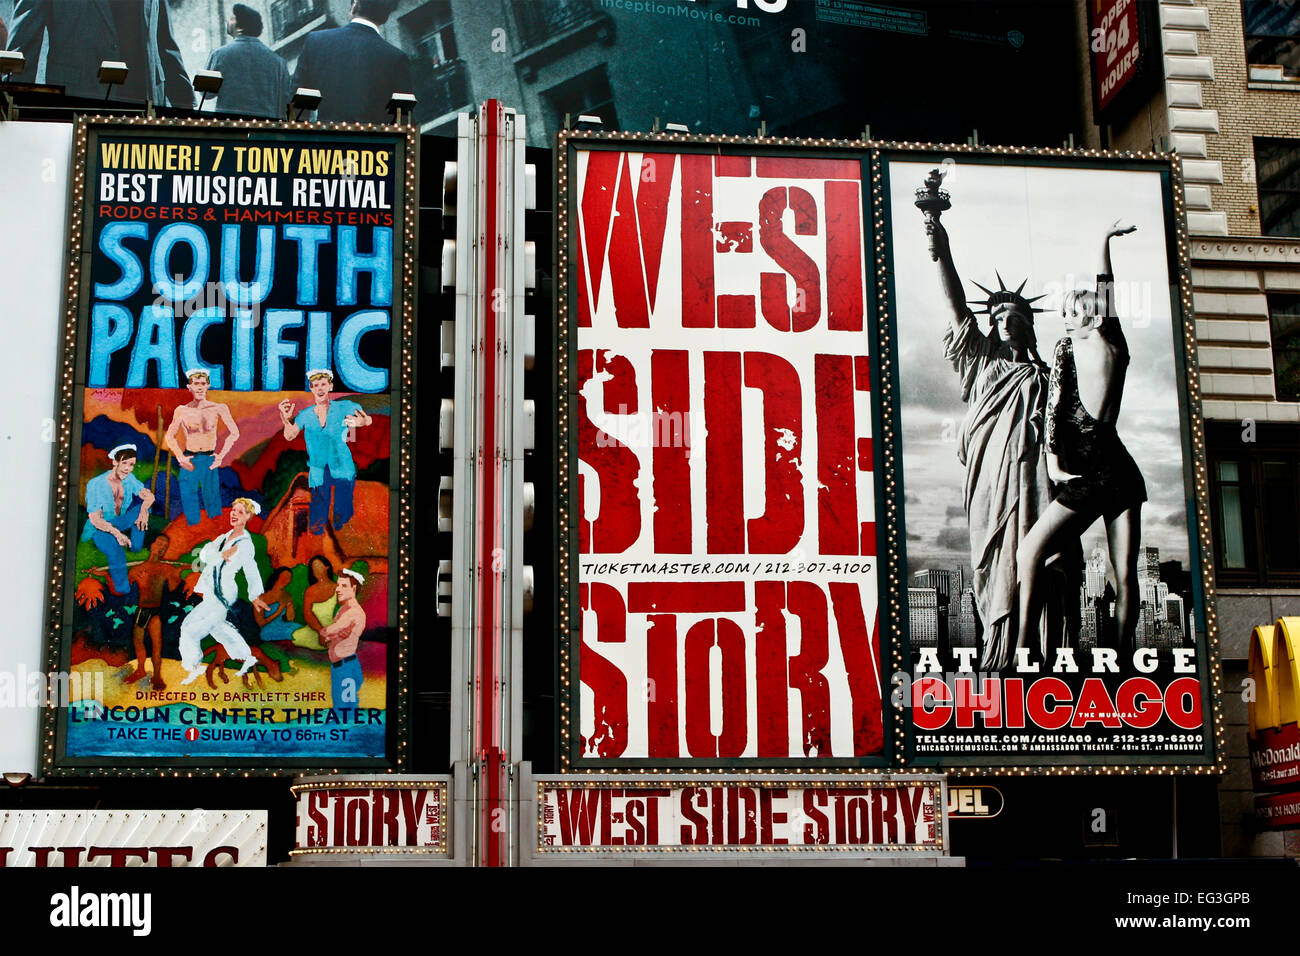 Annunci musicali di Broadway per spettacoli, lungo la 42nd Street a Times Square. Cartello pubblicitario. Quartiere dei teatri. Manhattan, New York City, New York, New York, Stati Uniti Foto Stock